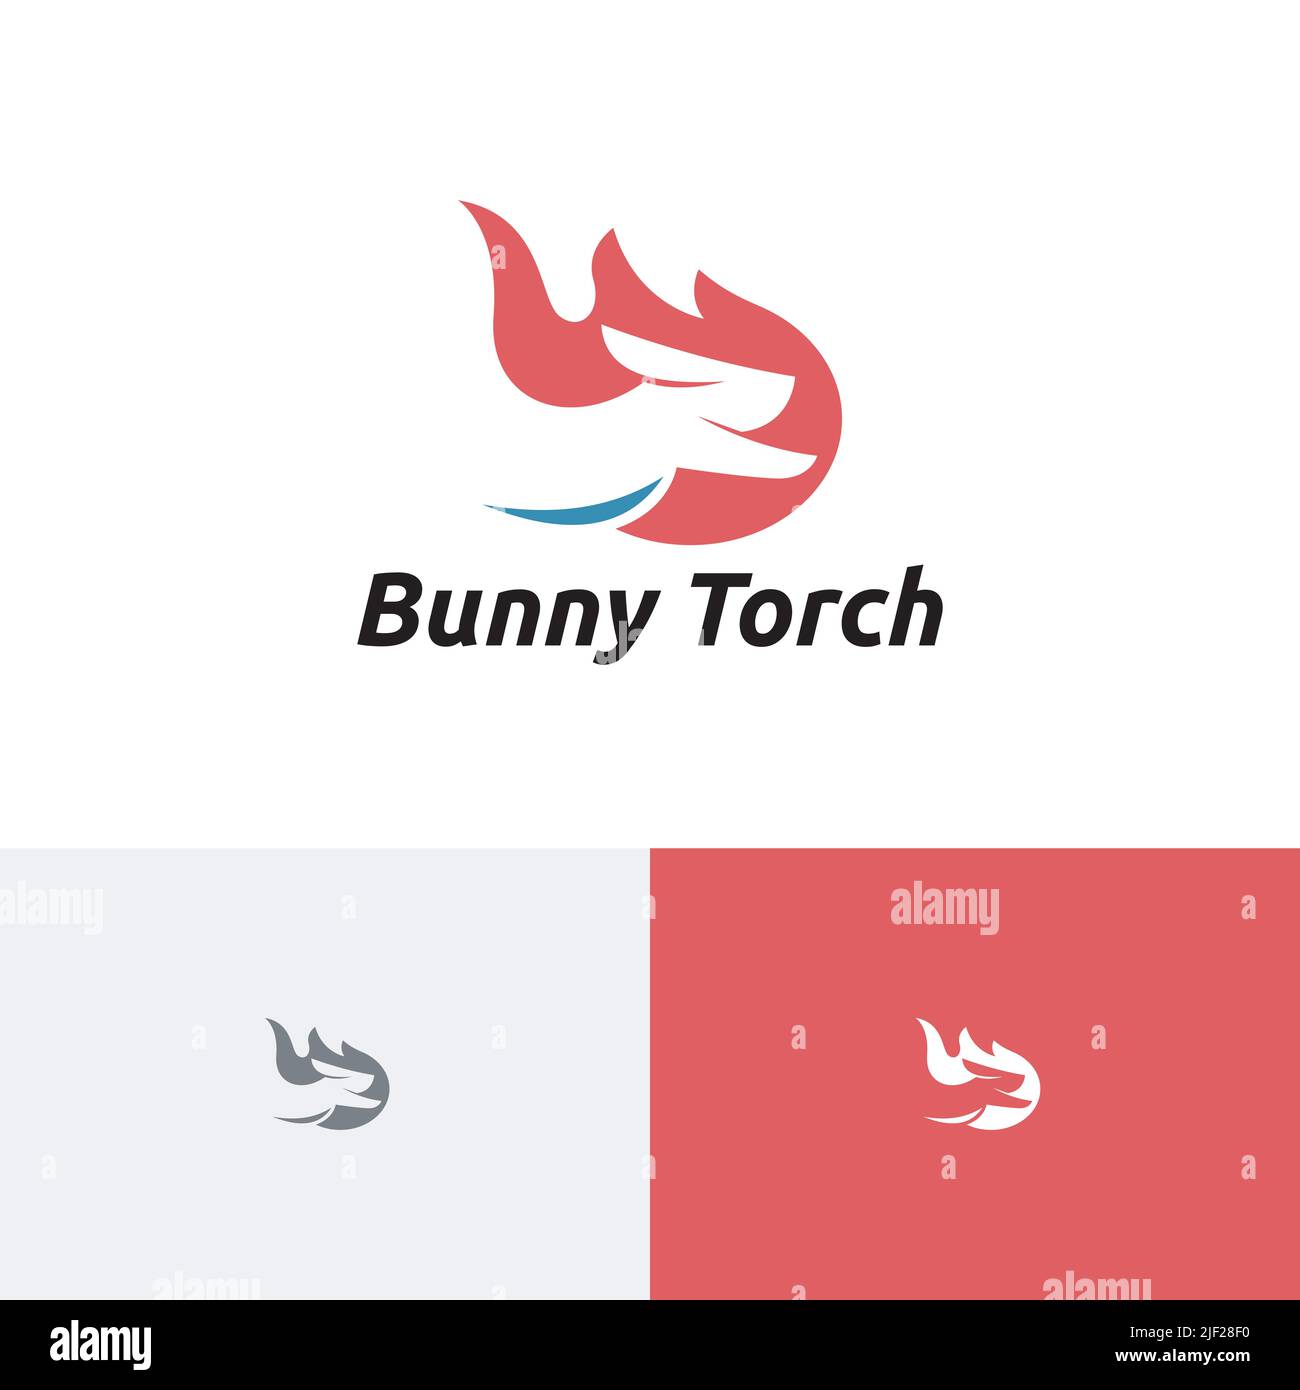 Coniglio Bunny Torch Fire Flame running Speed Logo Illustrazione Vettoriale